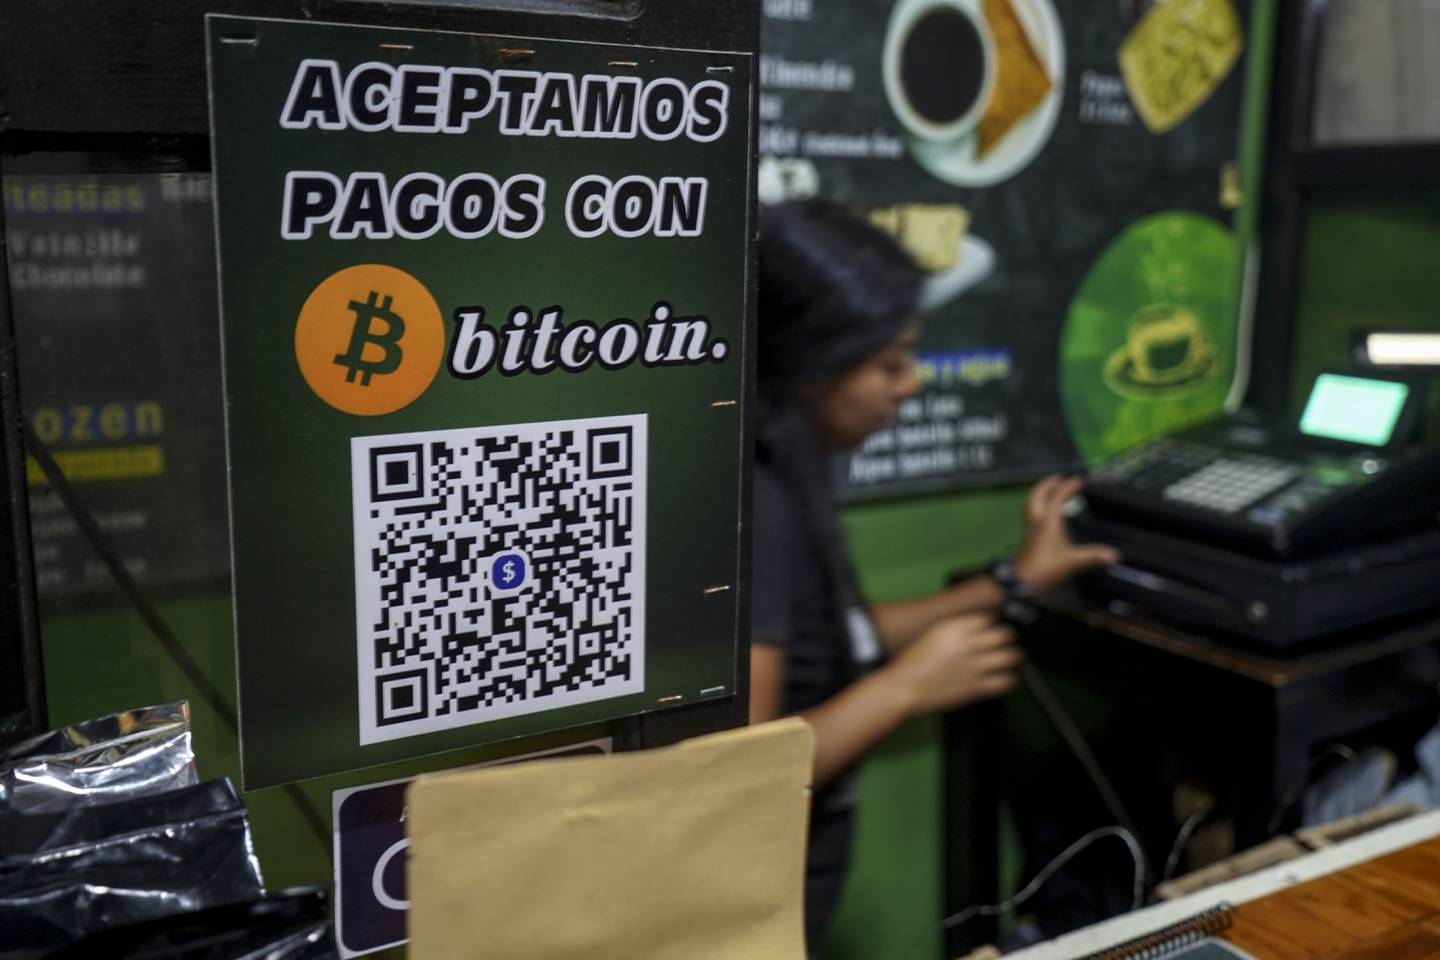 Según una encuesta de la Universidad de El Salvador, el 3,5% de los salvadoreños utiliza bitcoin para sus pagos, aunque no de manera intensiva. Foto: Camilo Freedman/Bloombergdfd